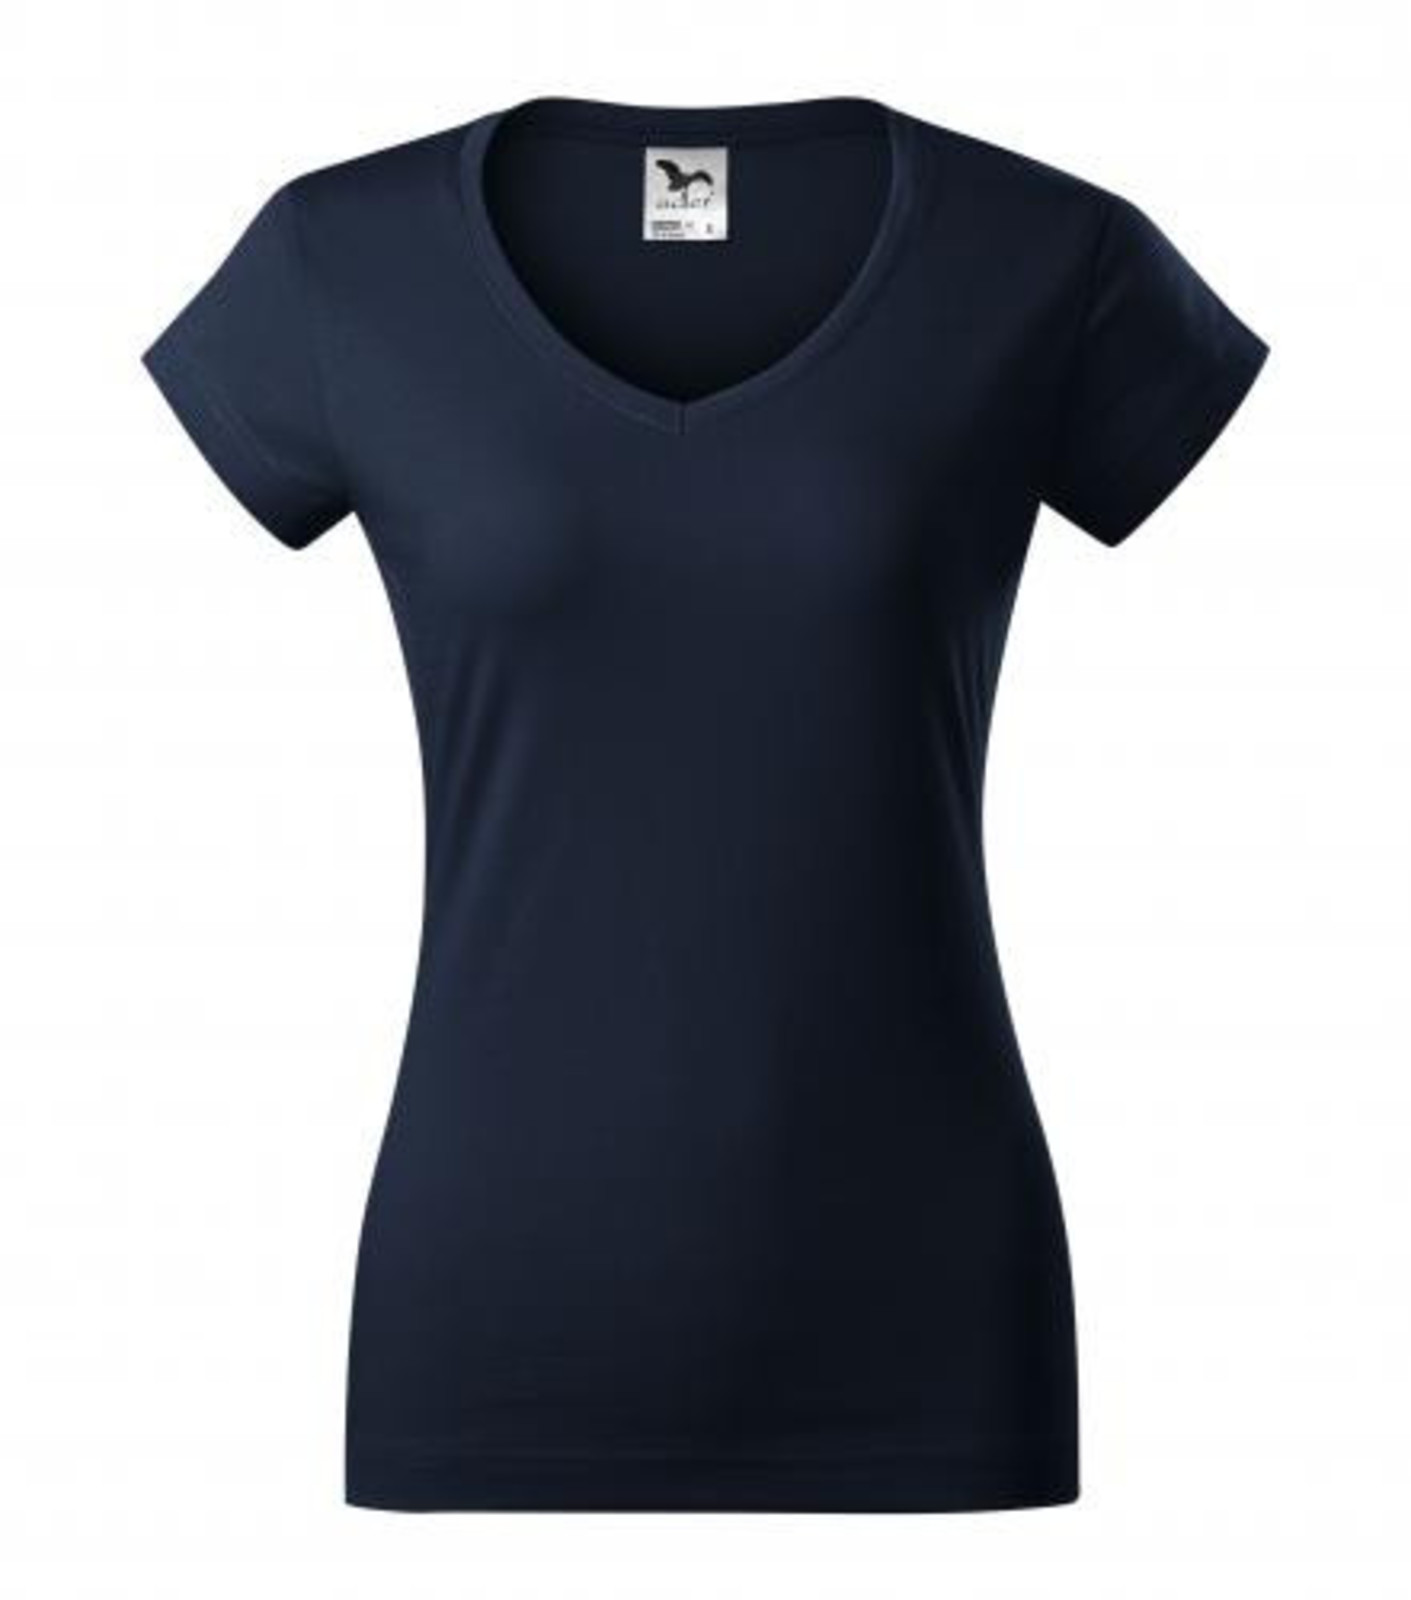 Dámske tričko s V výstrihom Adler Fit V-Neck 162 - veľkosť: XXL, farba: tmavo modrá